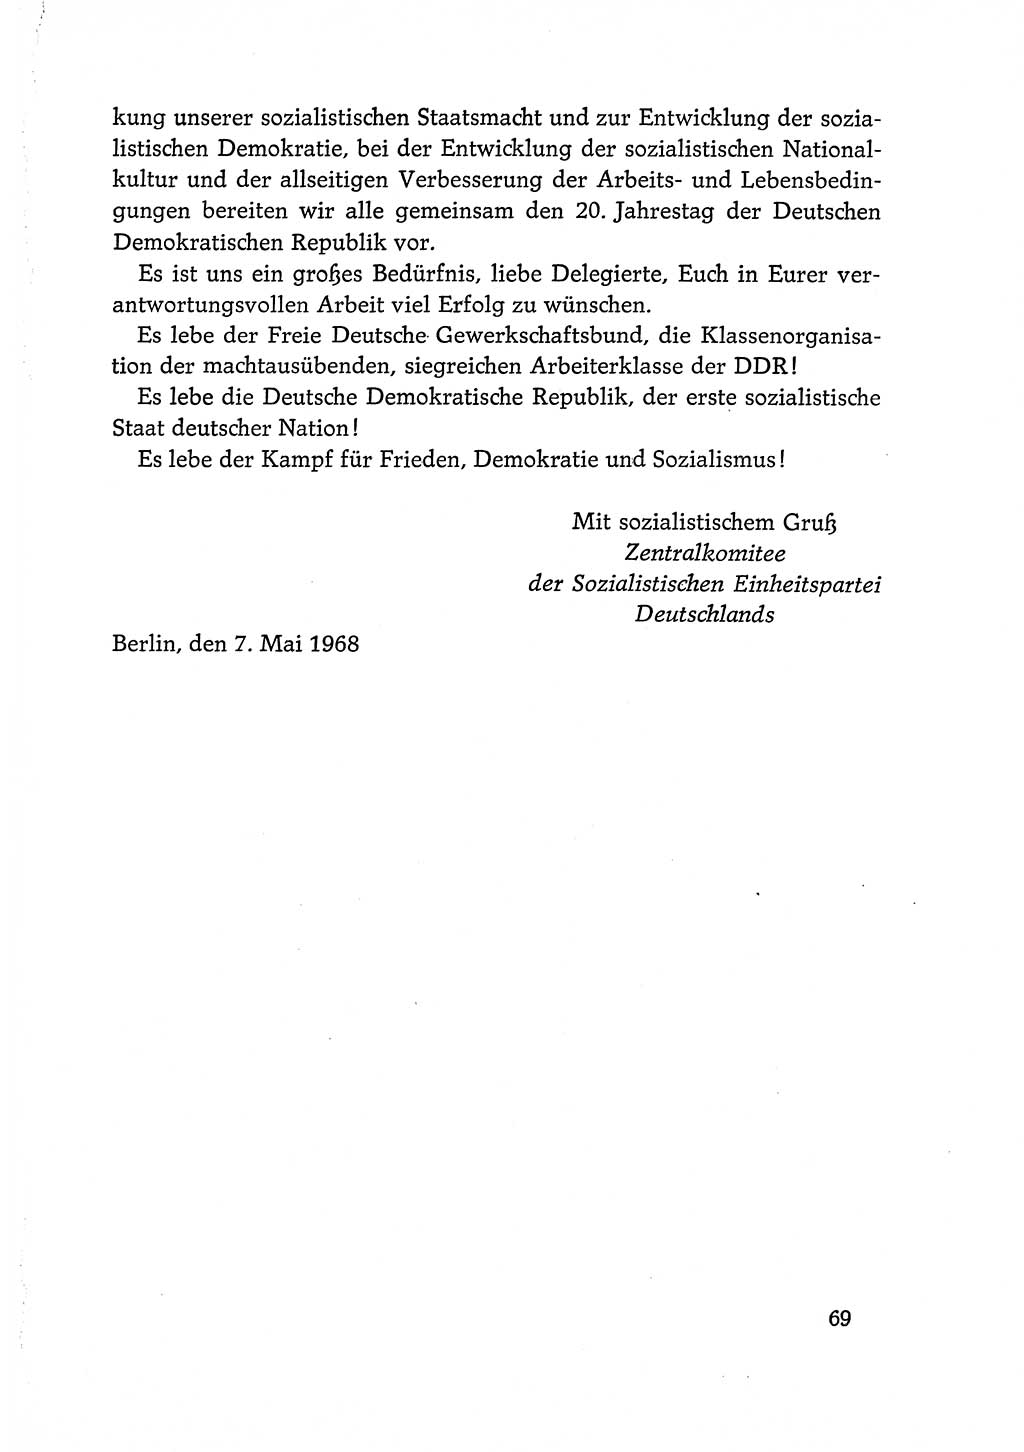 Dokumente der Sozialistischen Einheitspartei Deutschlands (SED) [Deutsche Demokratische Republik (DDR)] 1968-1969, Seite 69 (Dok. SED DDR 1968-1969, S. 69)